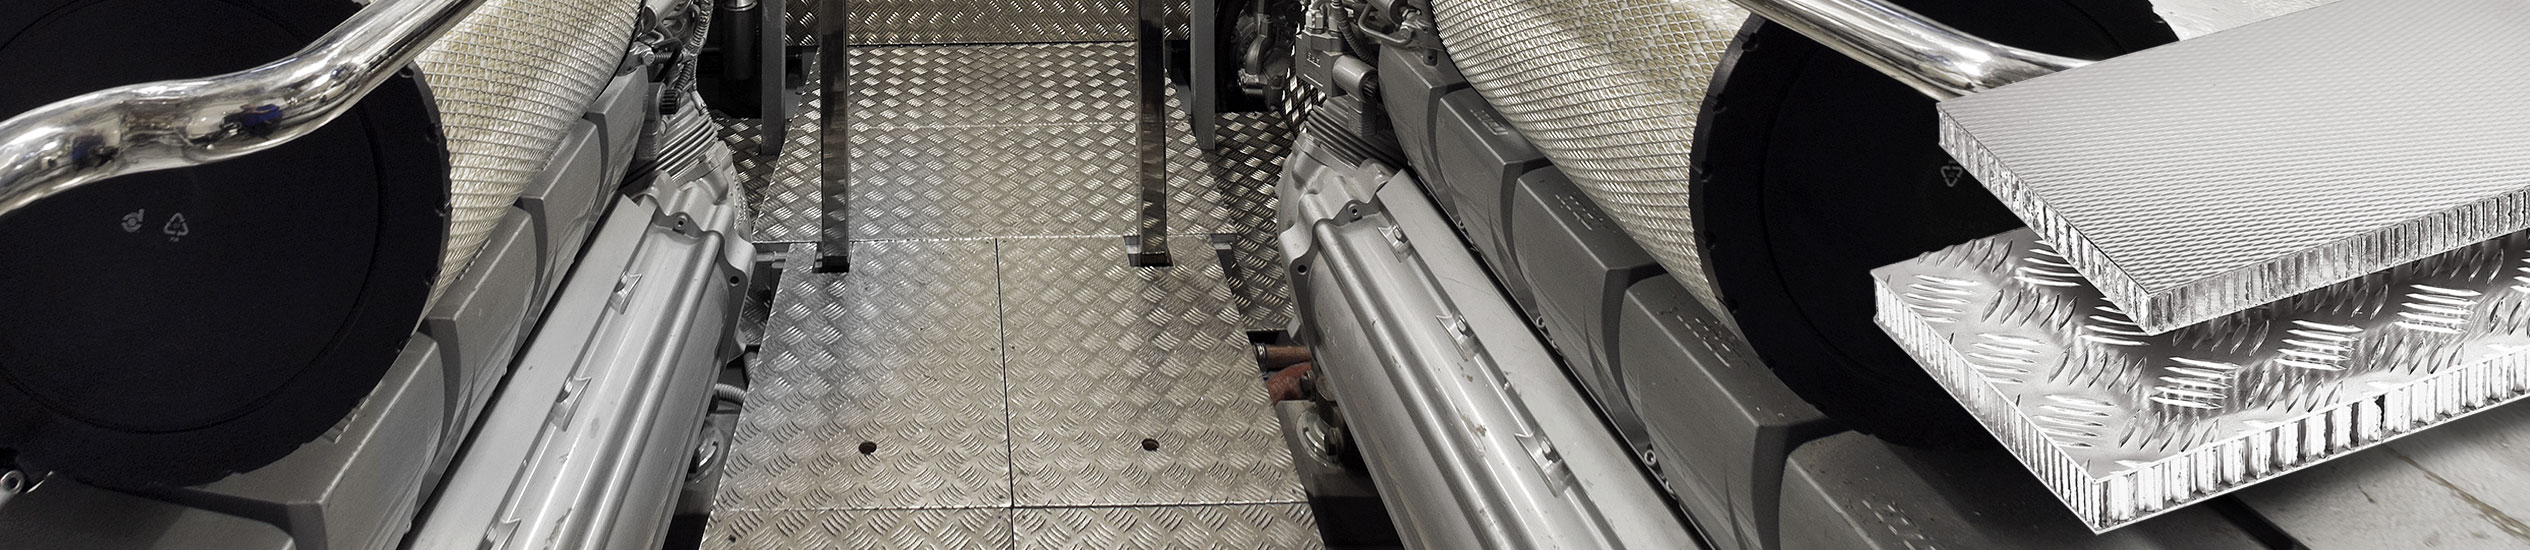 Pavimenti tecnici per sale macchine o pavimenti flottanti rigidi e perfettamente calpestabili come i pavimenti normali. Customizzabili come solo CEL sa fare